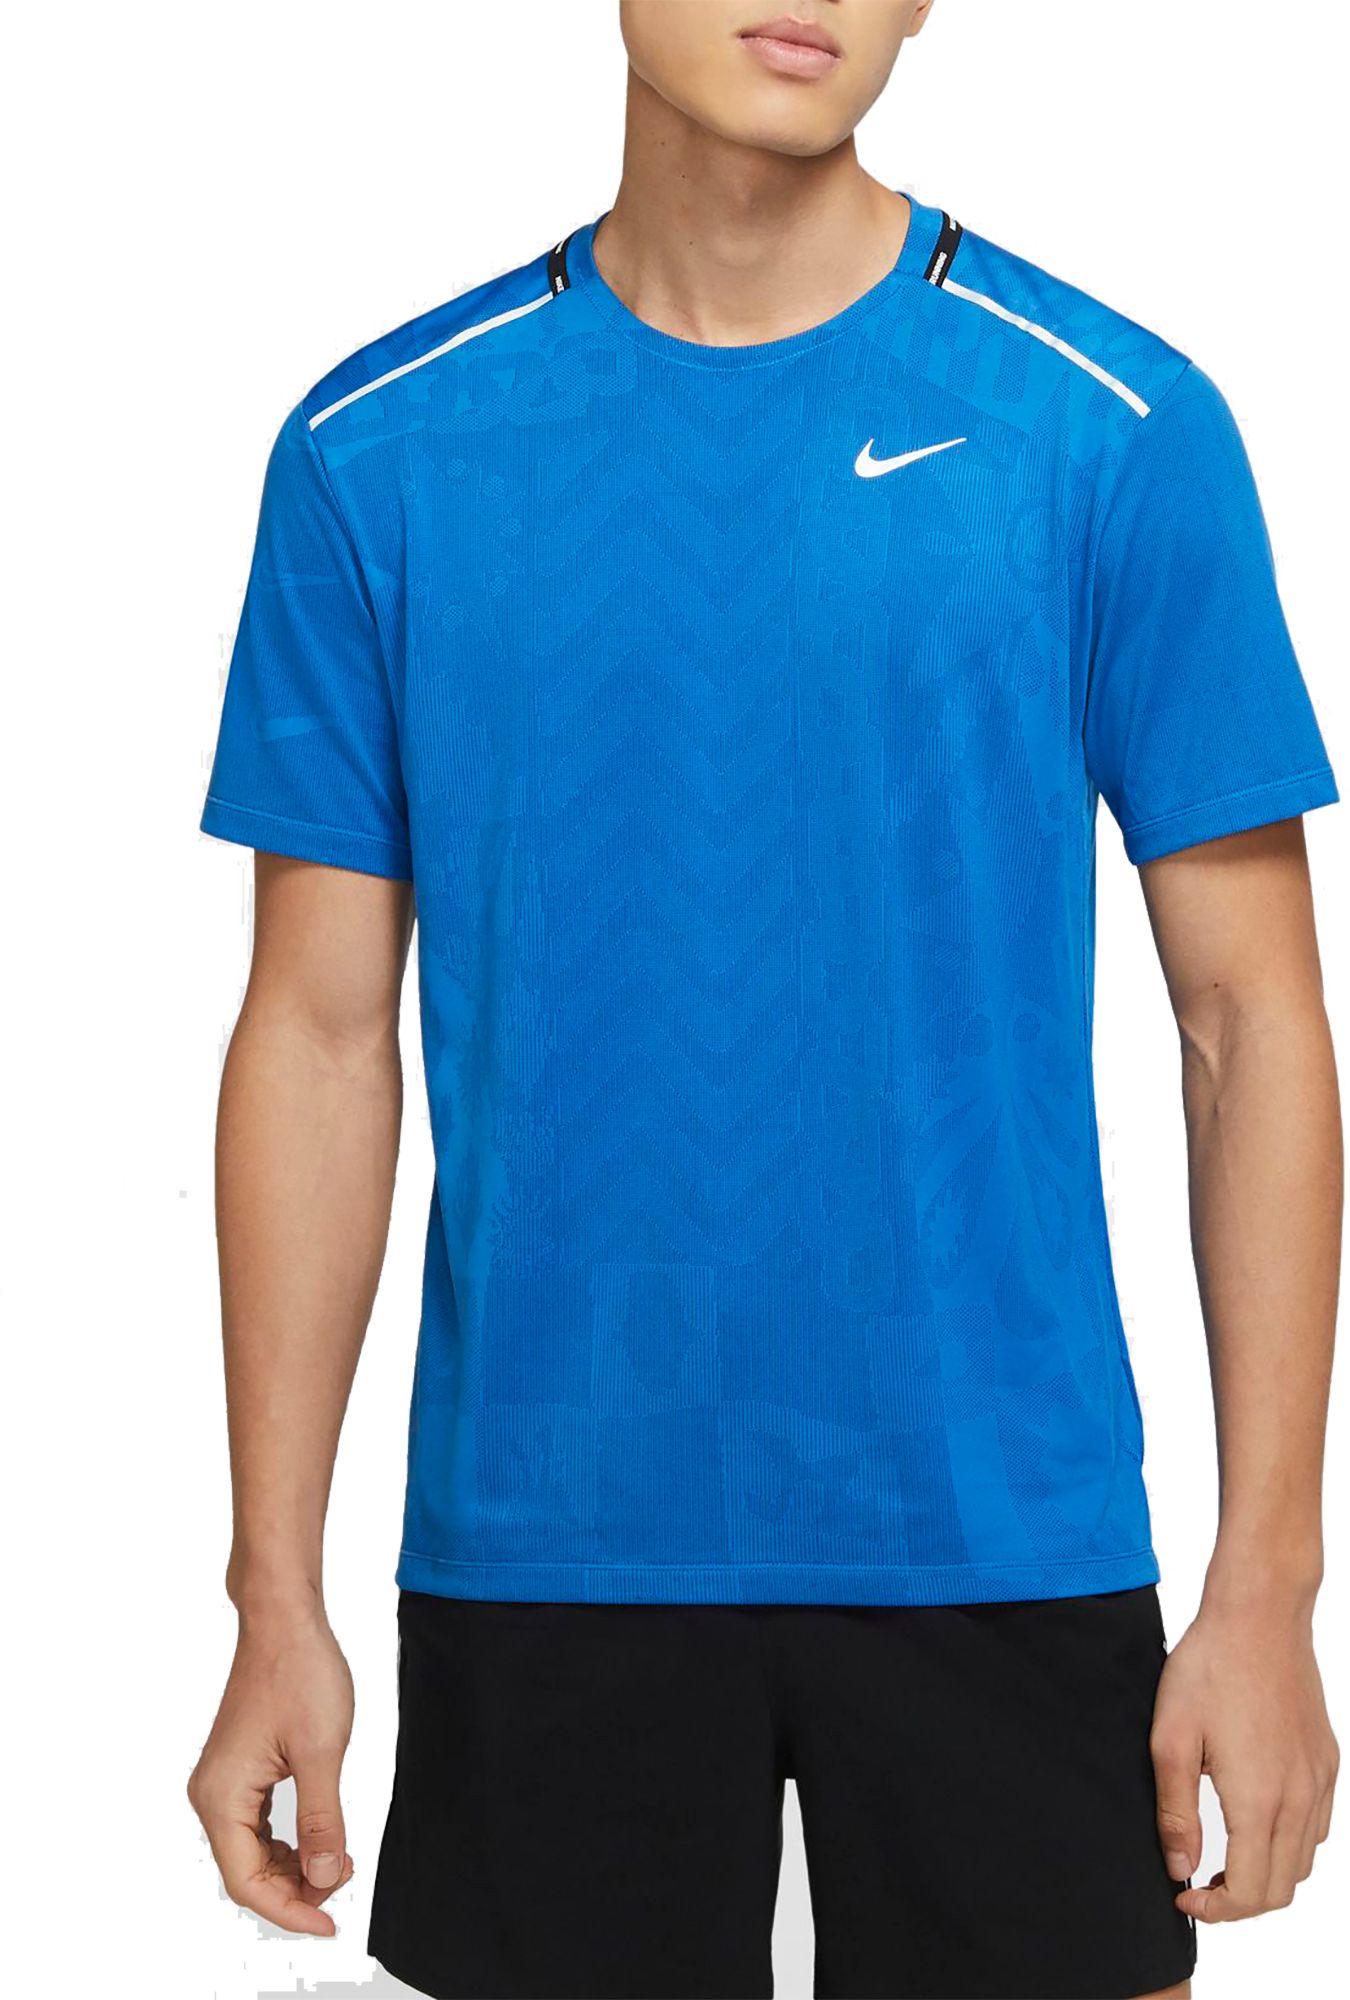 Nike Men's TechKnit Wild Run T-Shirt - .97